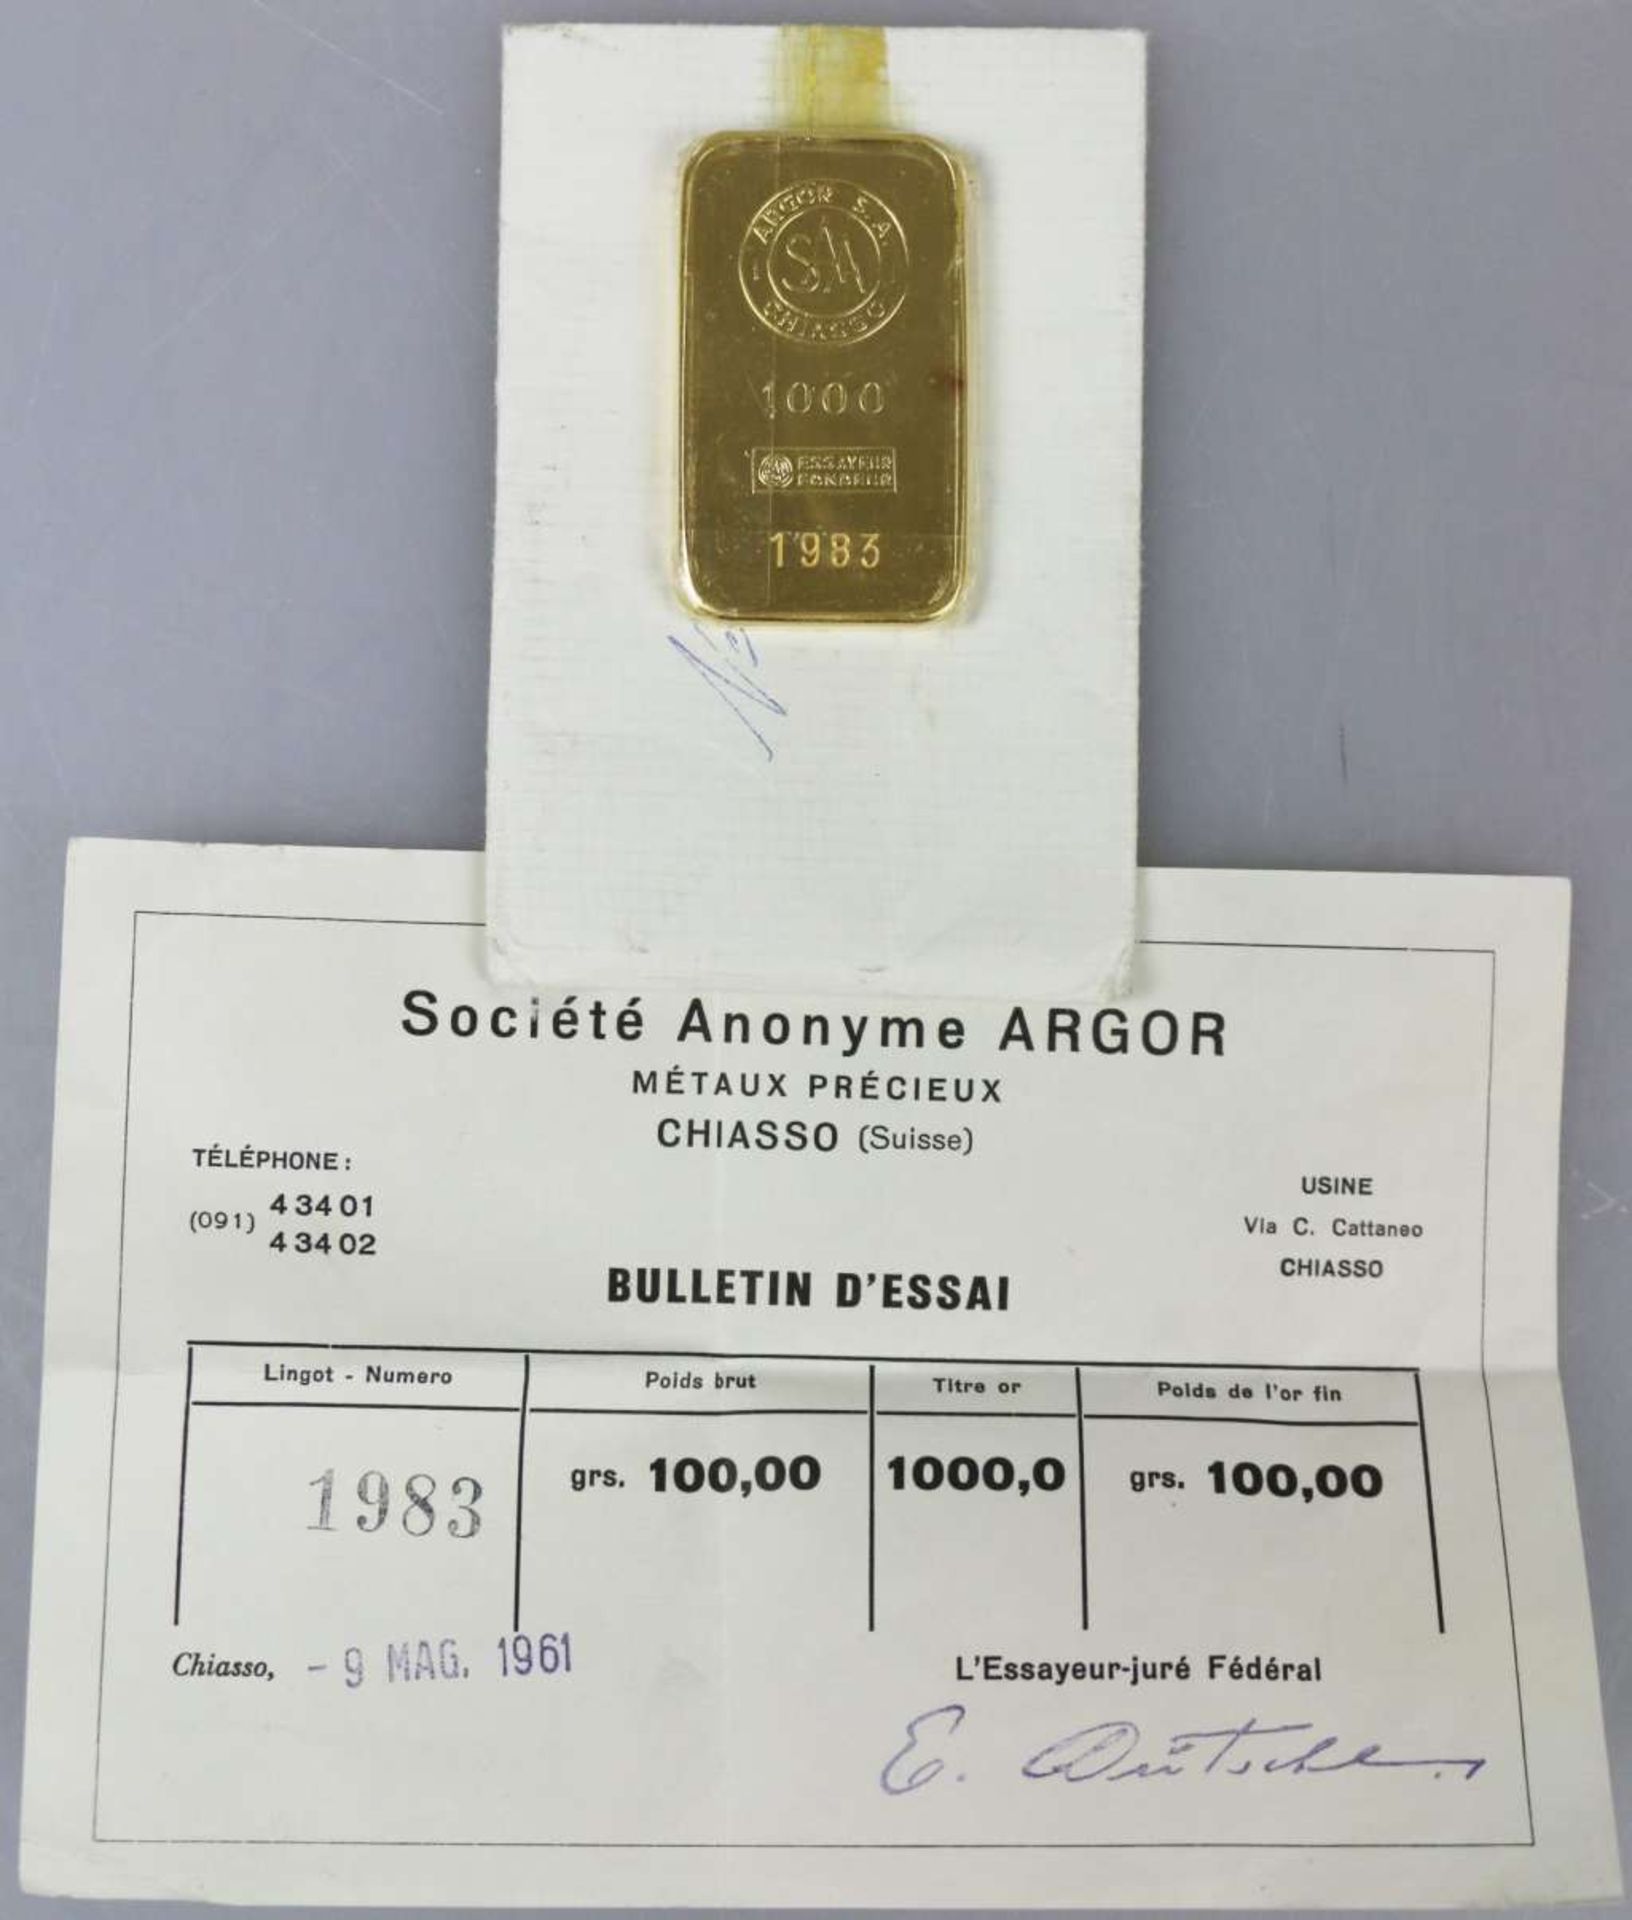 Goldbarren 100 Gramm bez. "ARGOR S.A. CHIASSO 1000 ESSAYEUR FONDEUR", Nr. 1983 von 1961